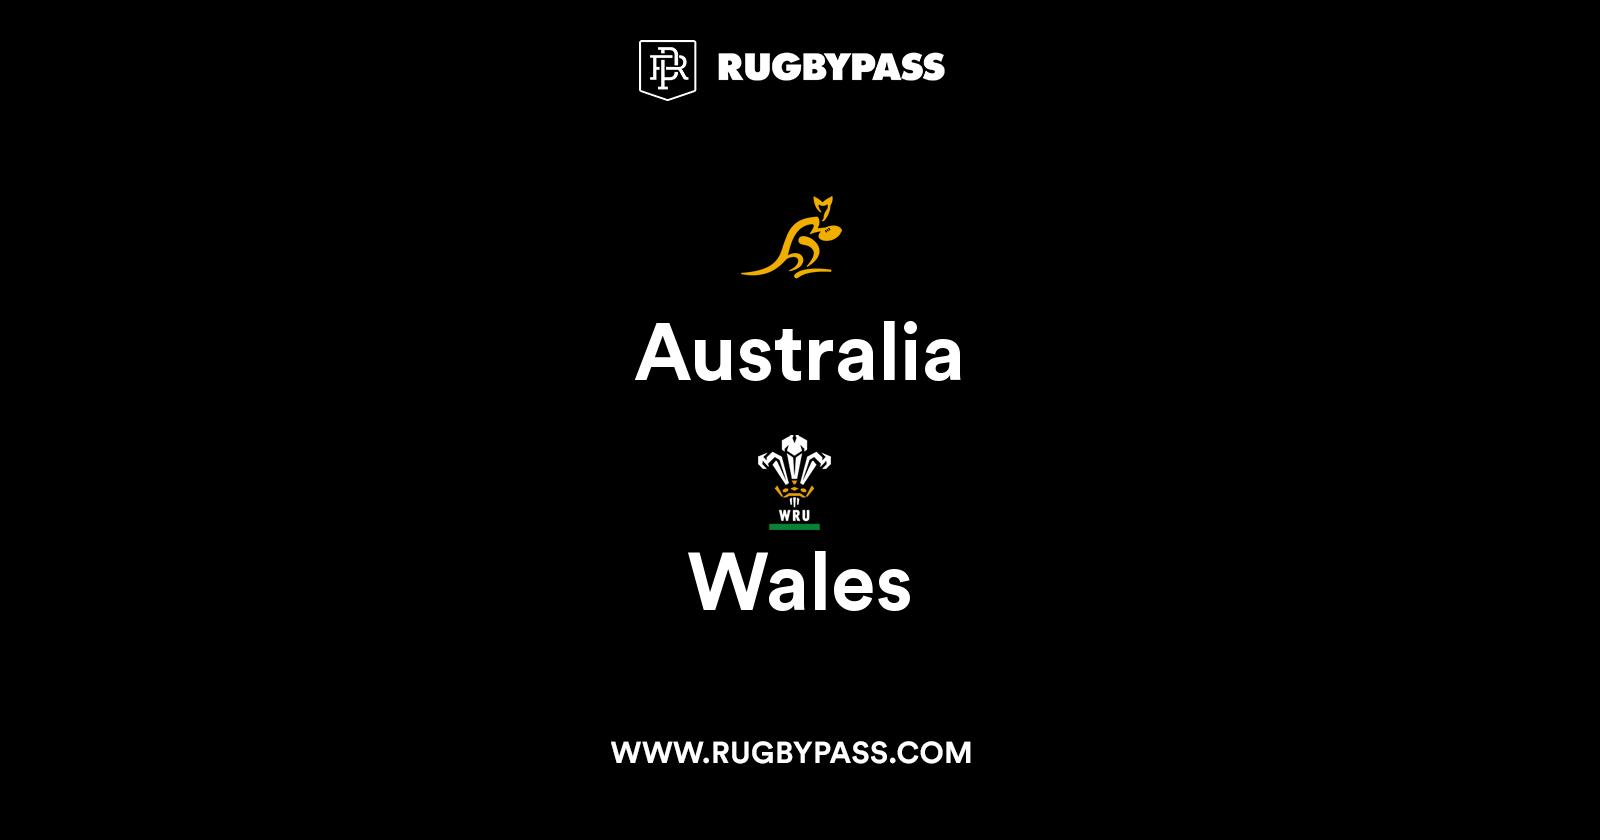 www.rugbypass.com